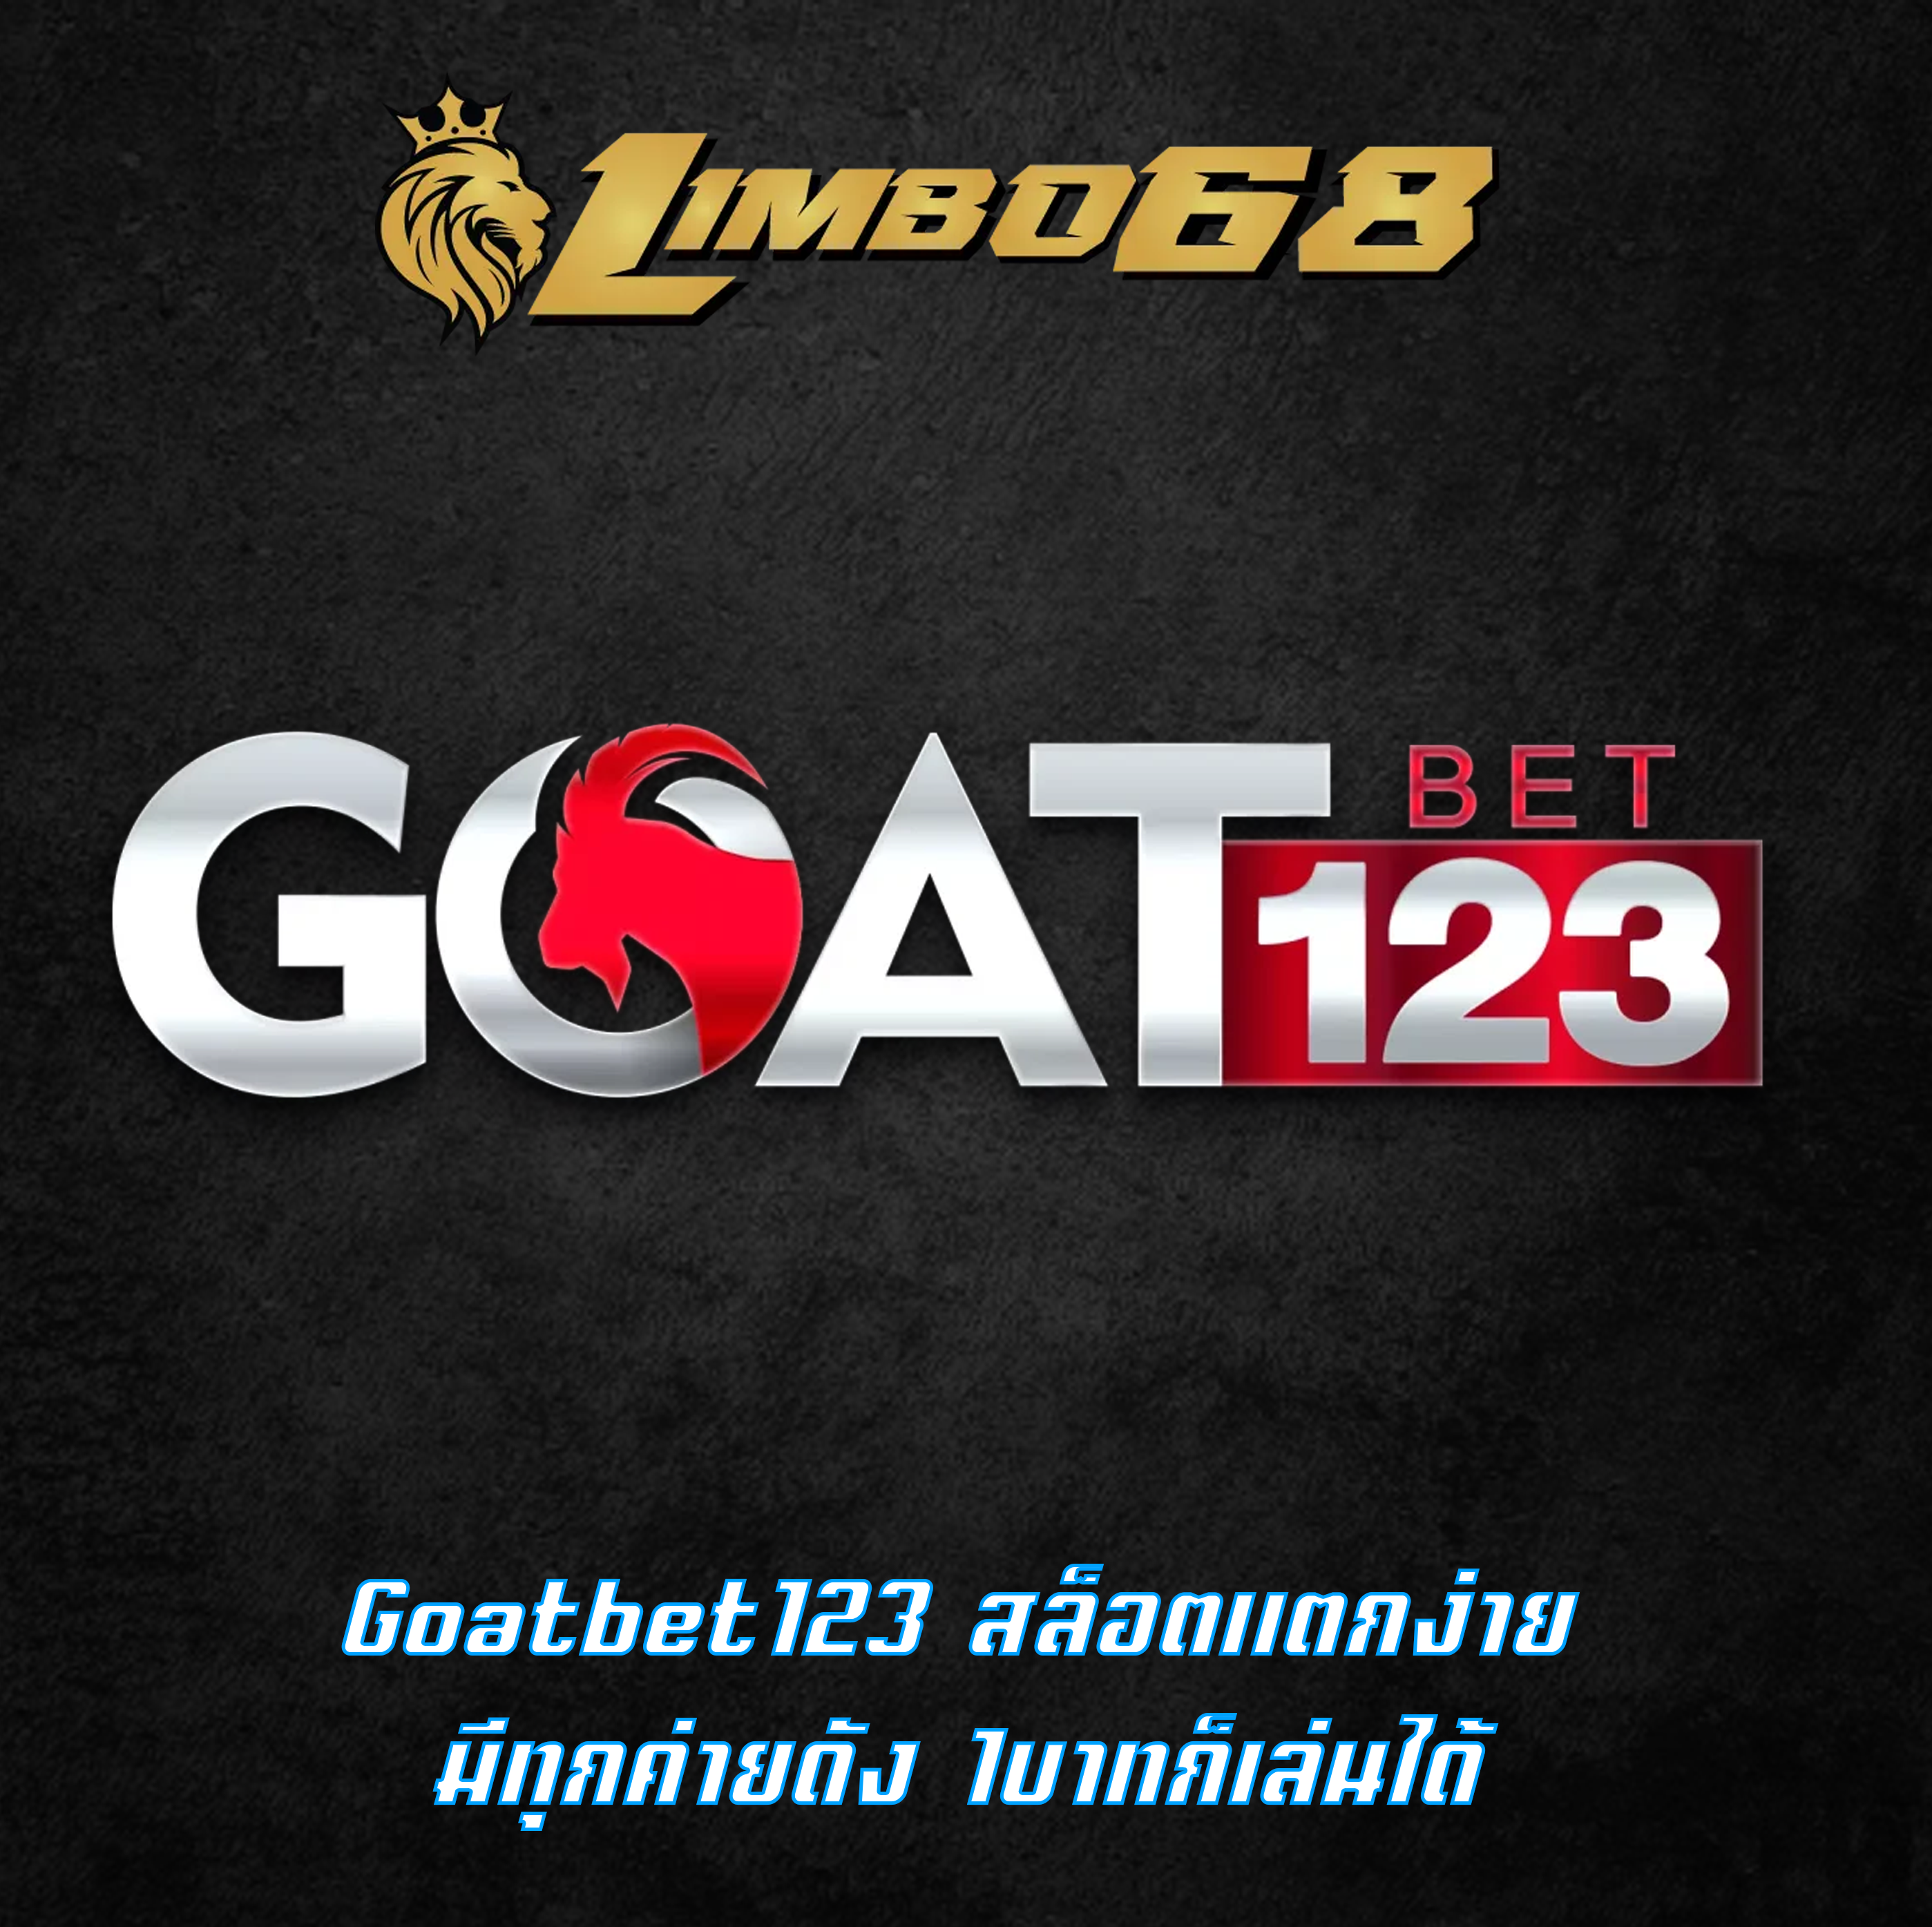 Goatbet123